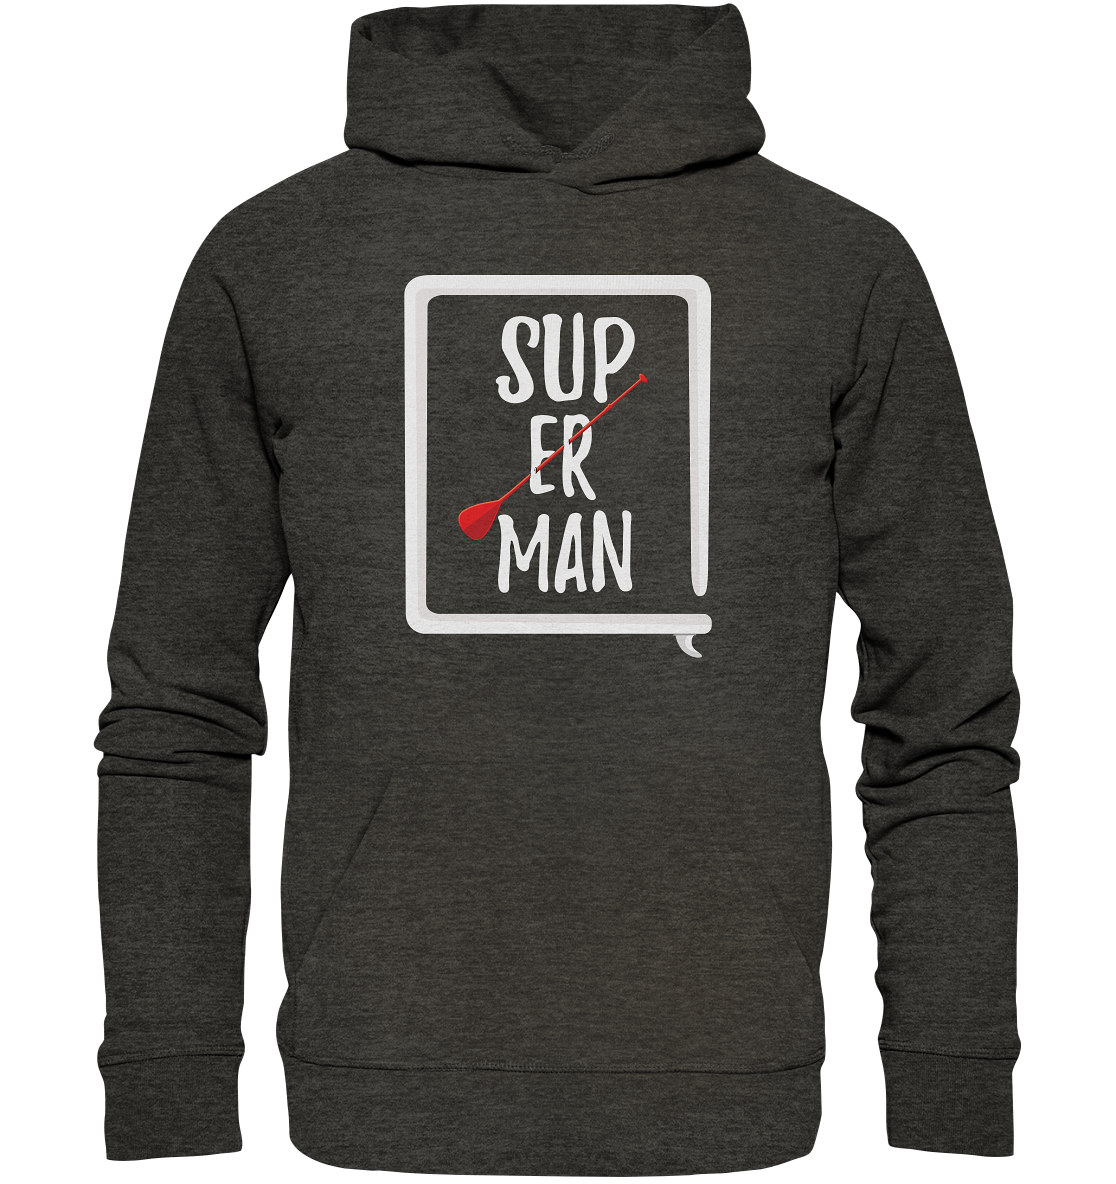 SUP ER MAN 2.0  - Organic Hoodie